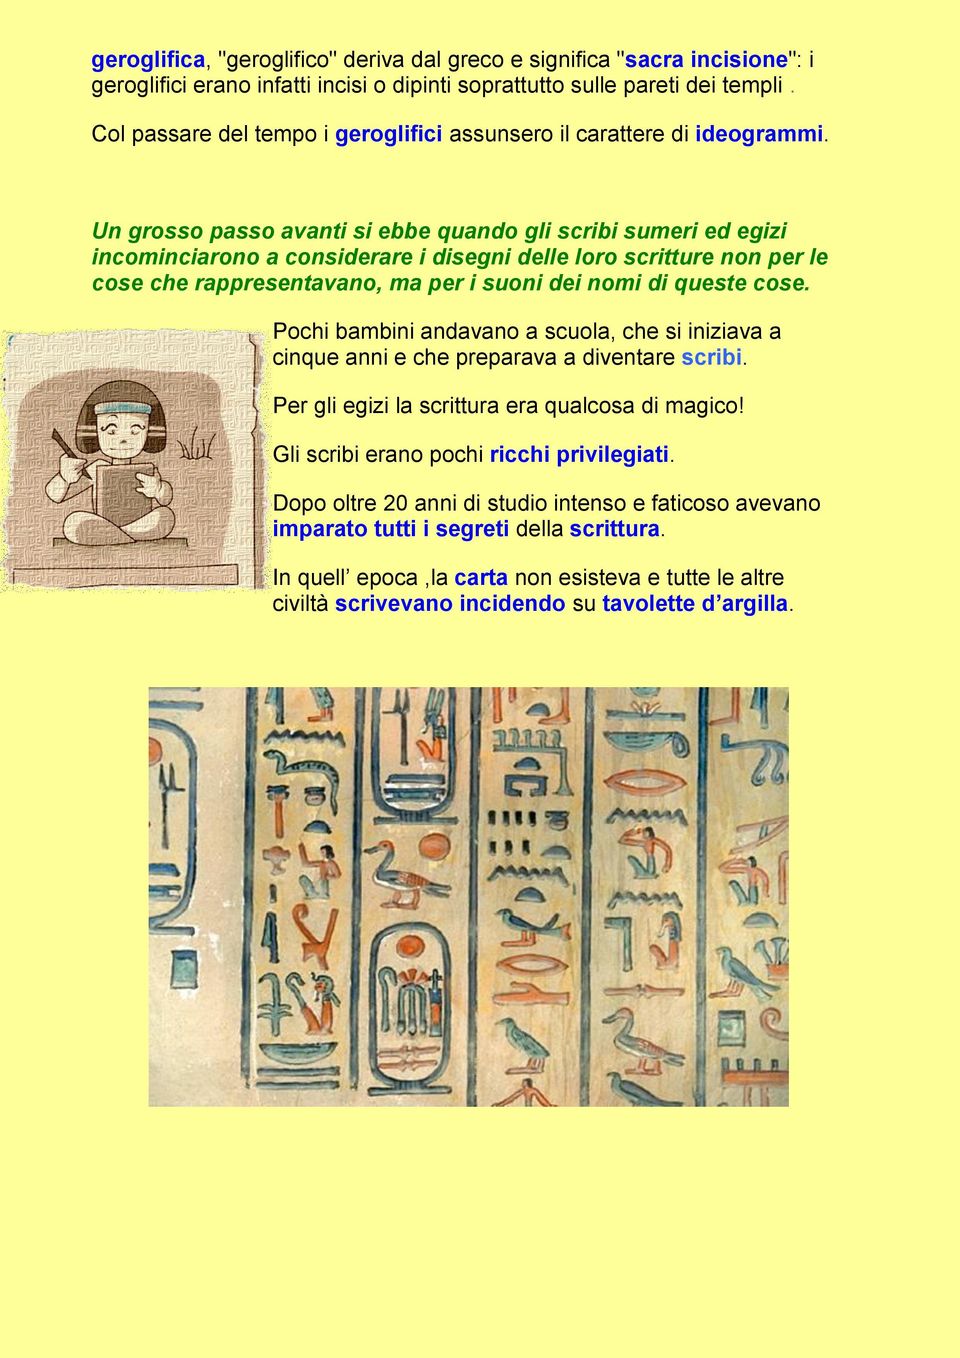 Un grosso passo avanti si ebbe quando gli scribi sumeri ed egizi incominciarono a considerare i disegni delle loro scritture non per le cose che rappresentavano, ma per i suoni dei nomi di queste